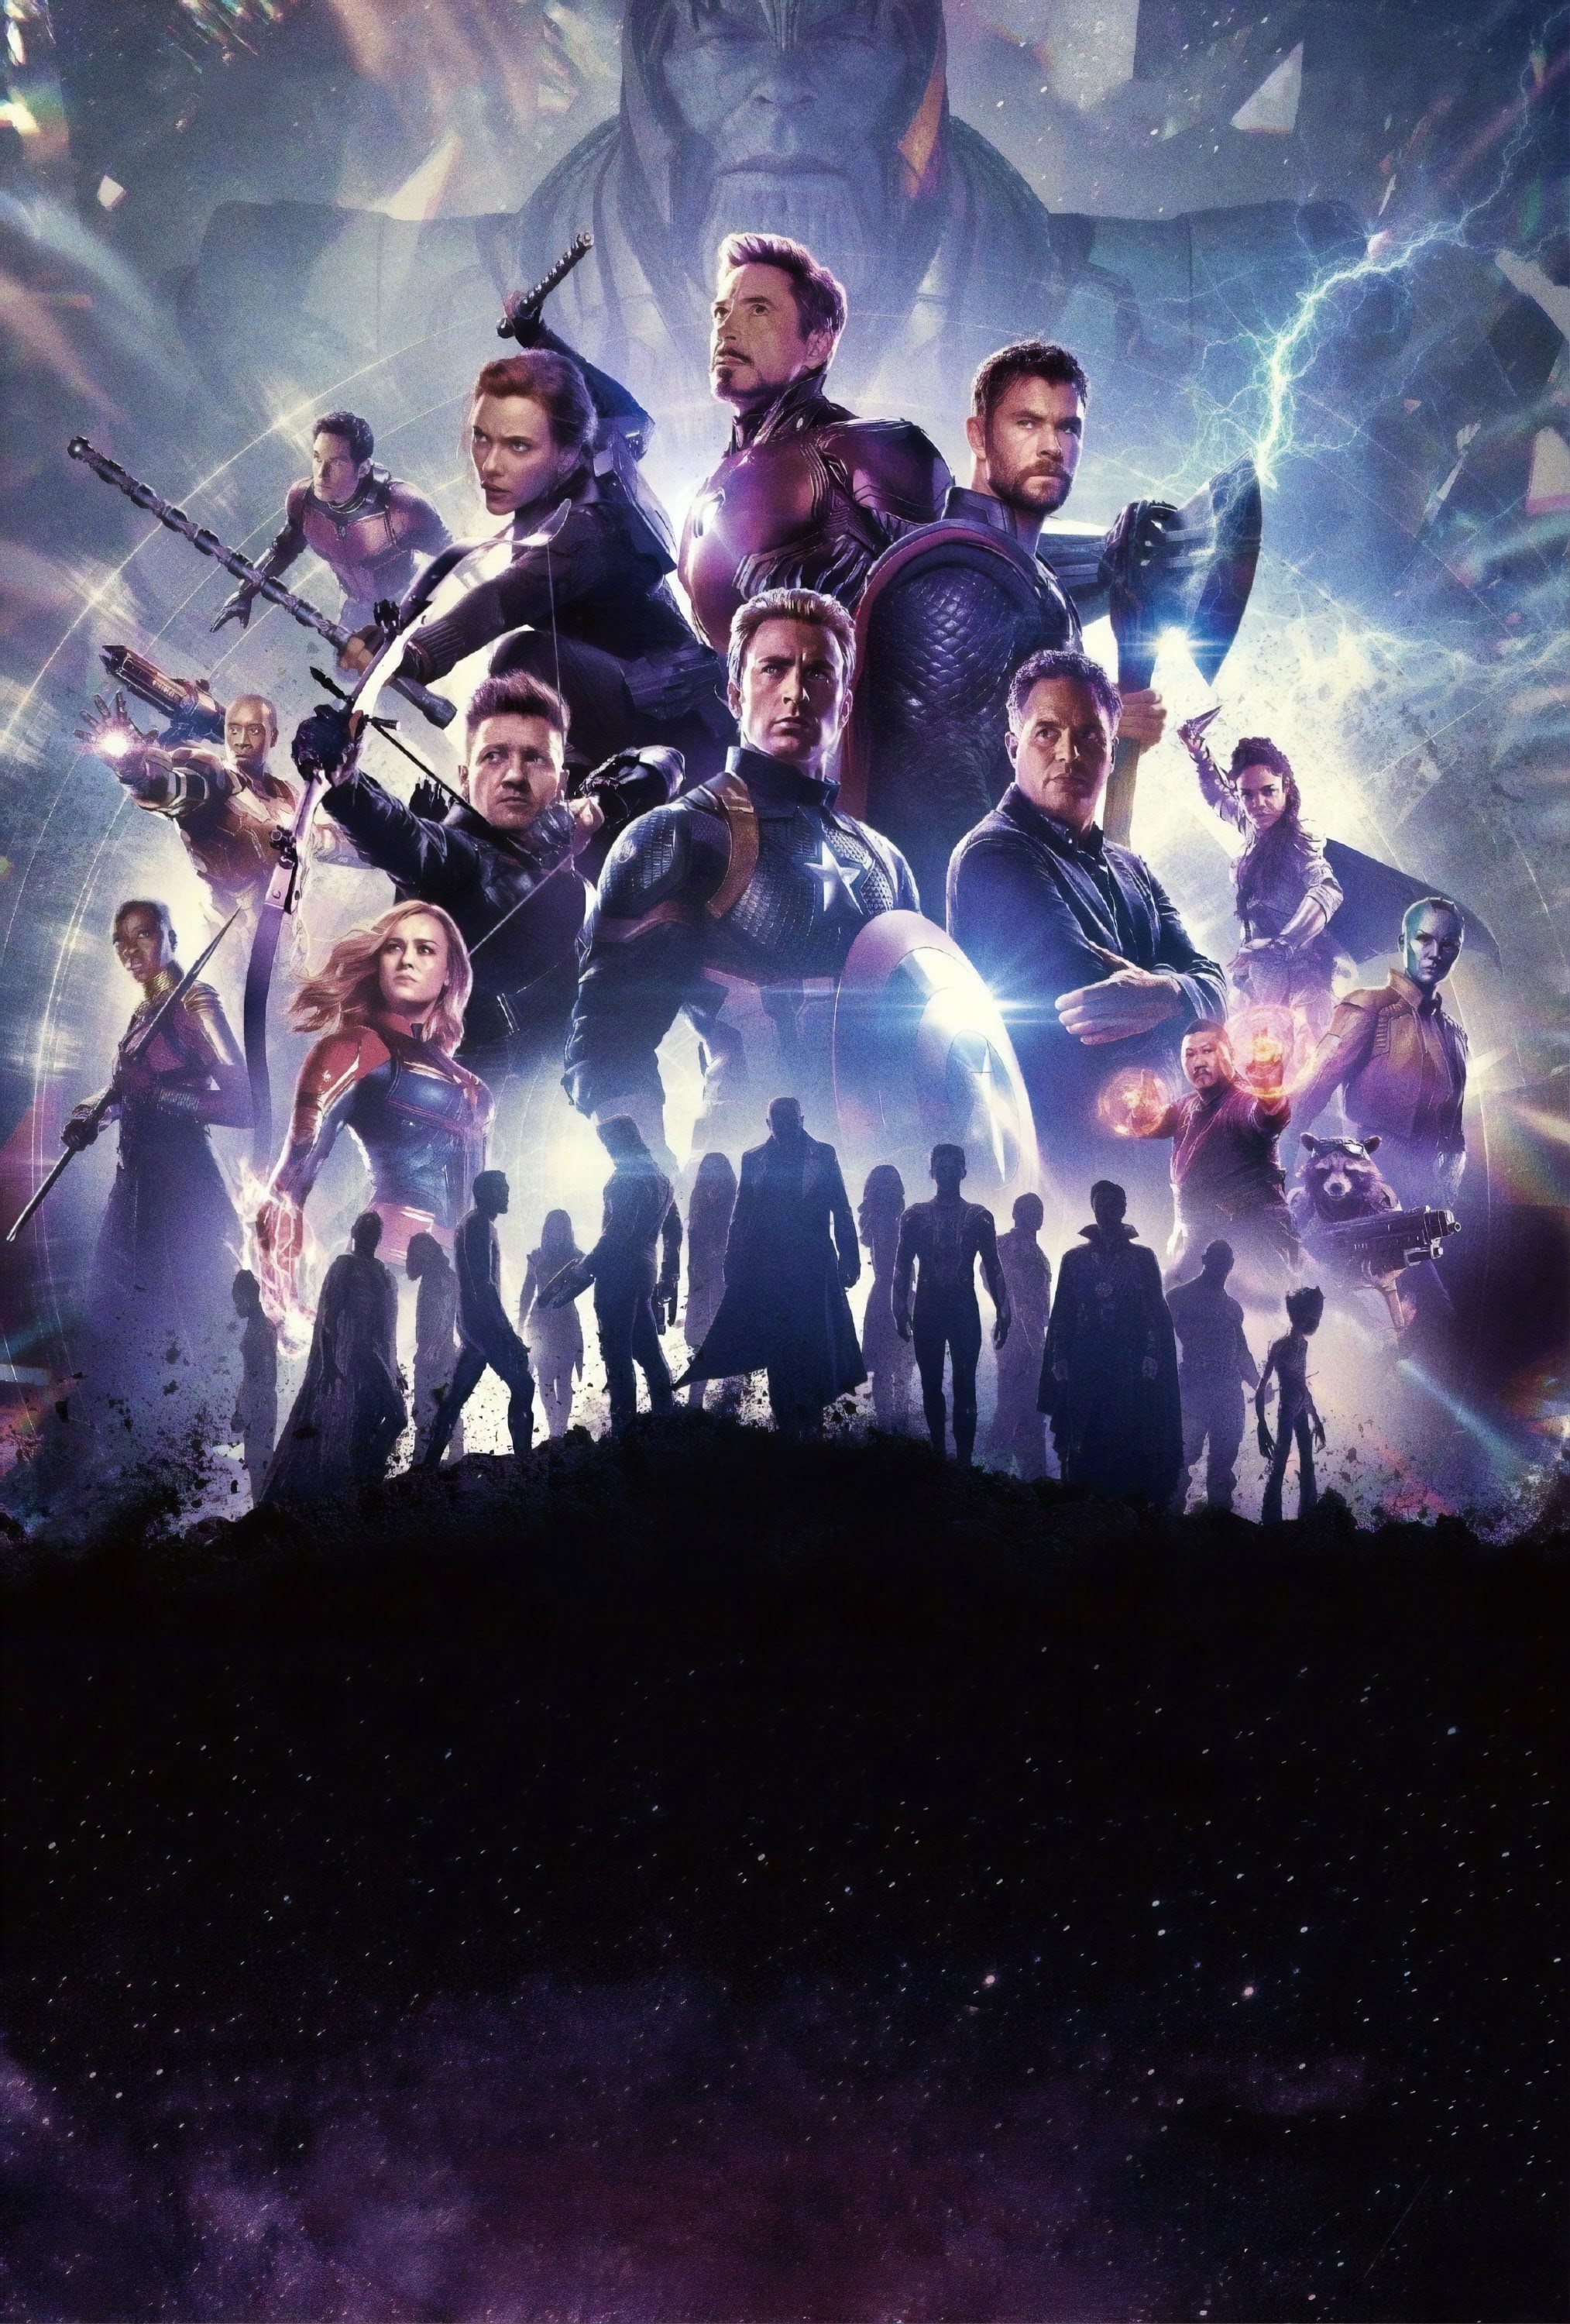 Avengers Endgame Textless Poster マーベルのヒーロー大集合映画のクライマックス アベンジャーズ エンドゲーム の海外版ポスターに 映画のタイトルや出演者の名前の文字を配置する前の素のオリジナル アートの原画ポスター Cia Movie News